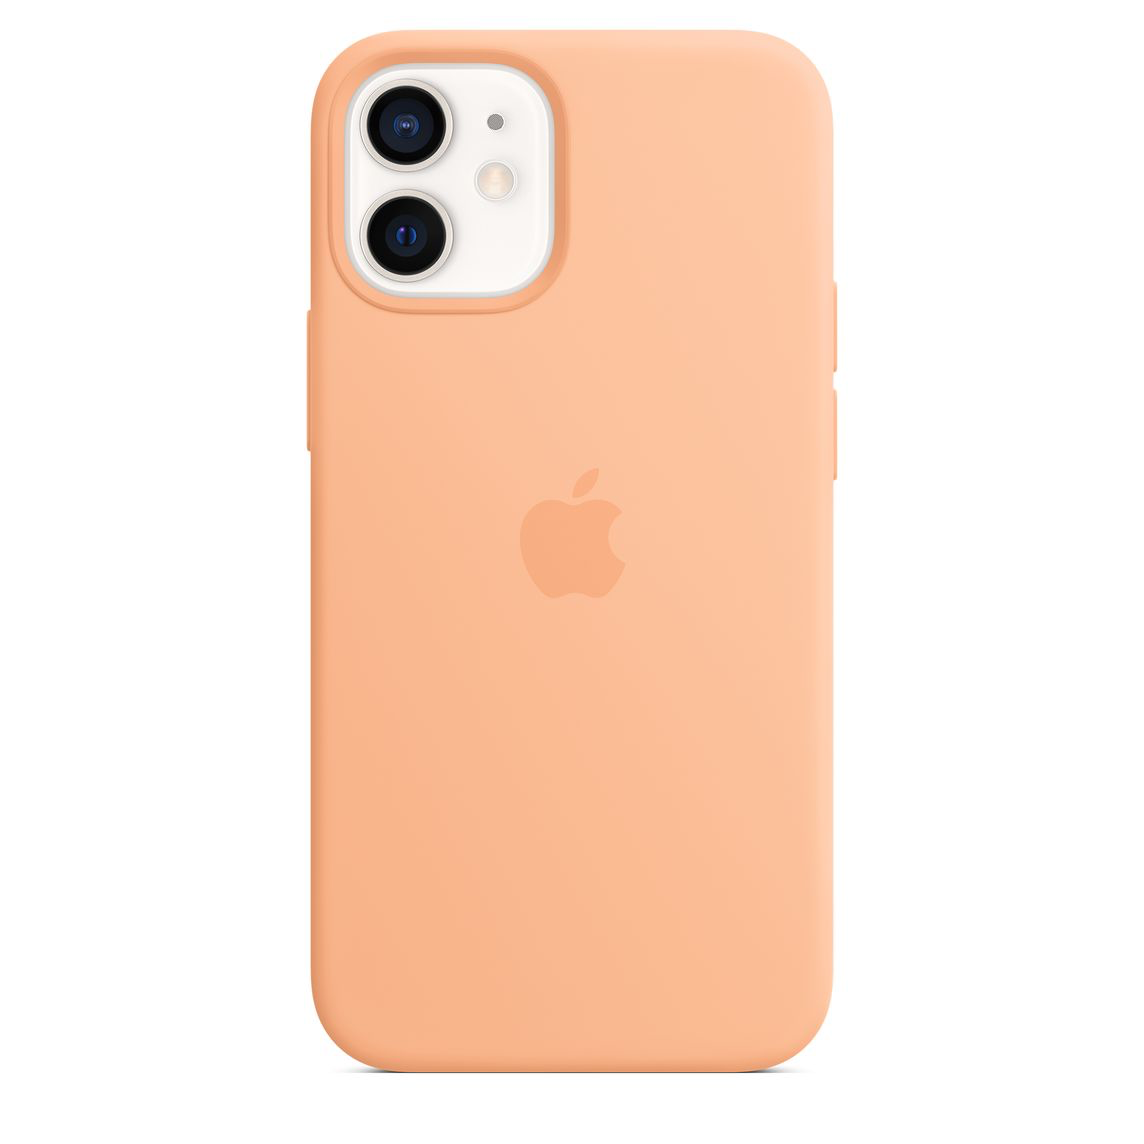 Apple iPhone 12 mini Silicone Case with MagSafe Cantaloupe